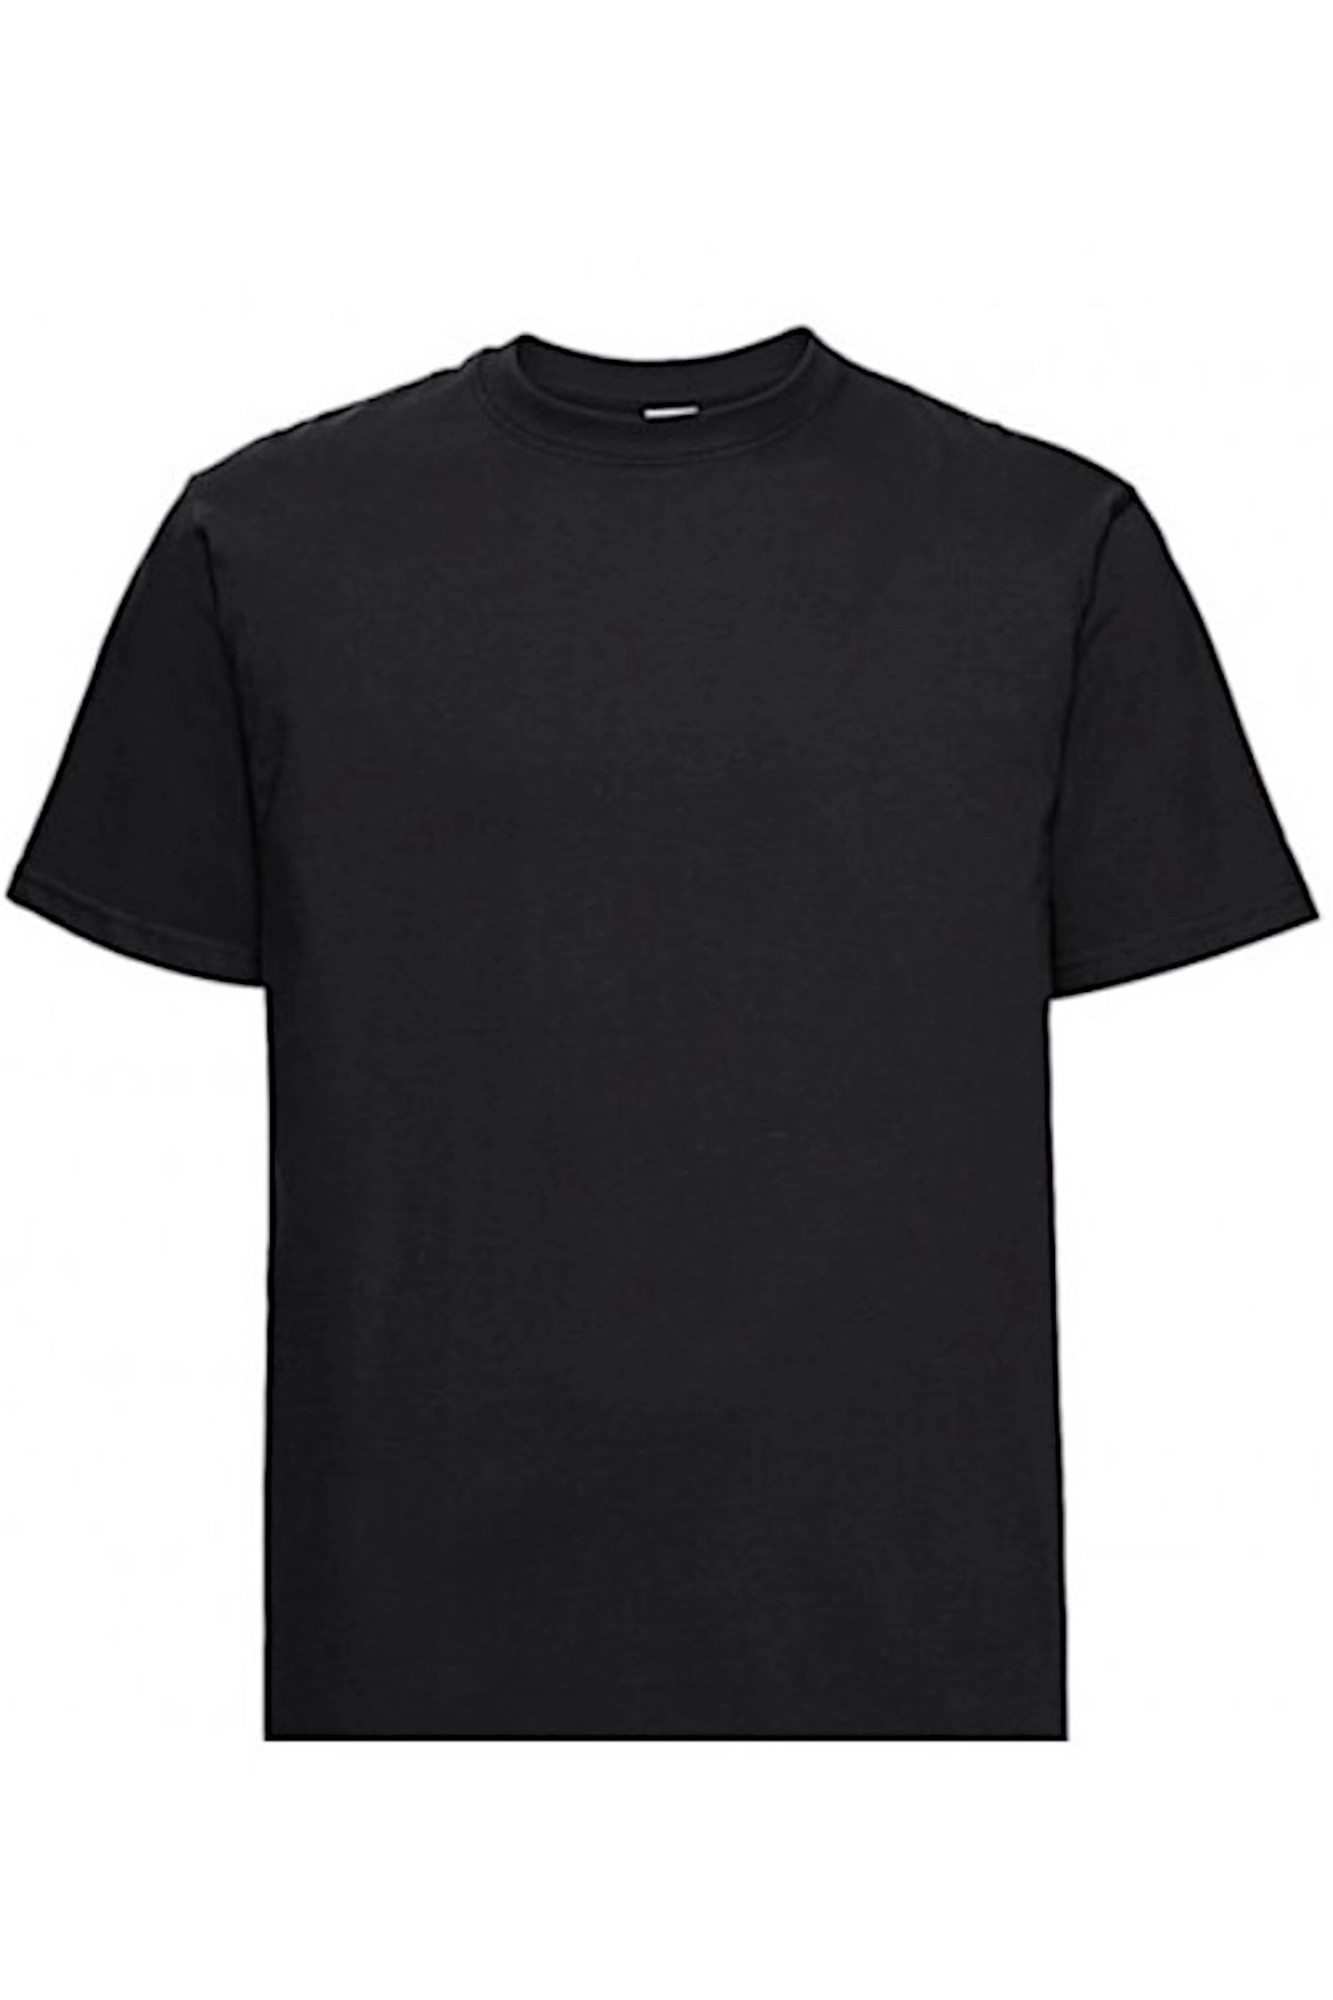 Pánské tričko 002 black - NOVITI černá M